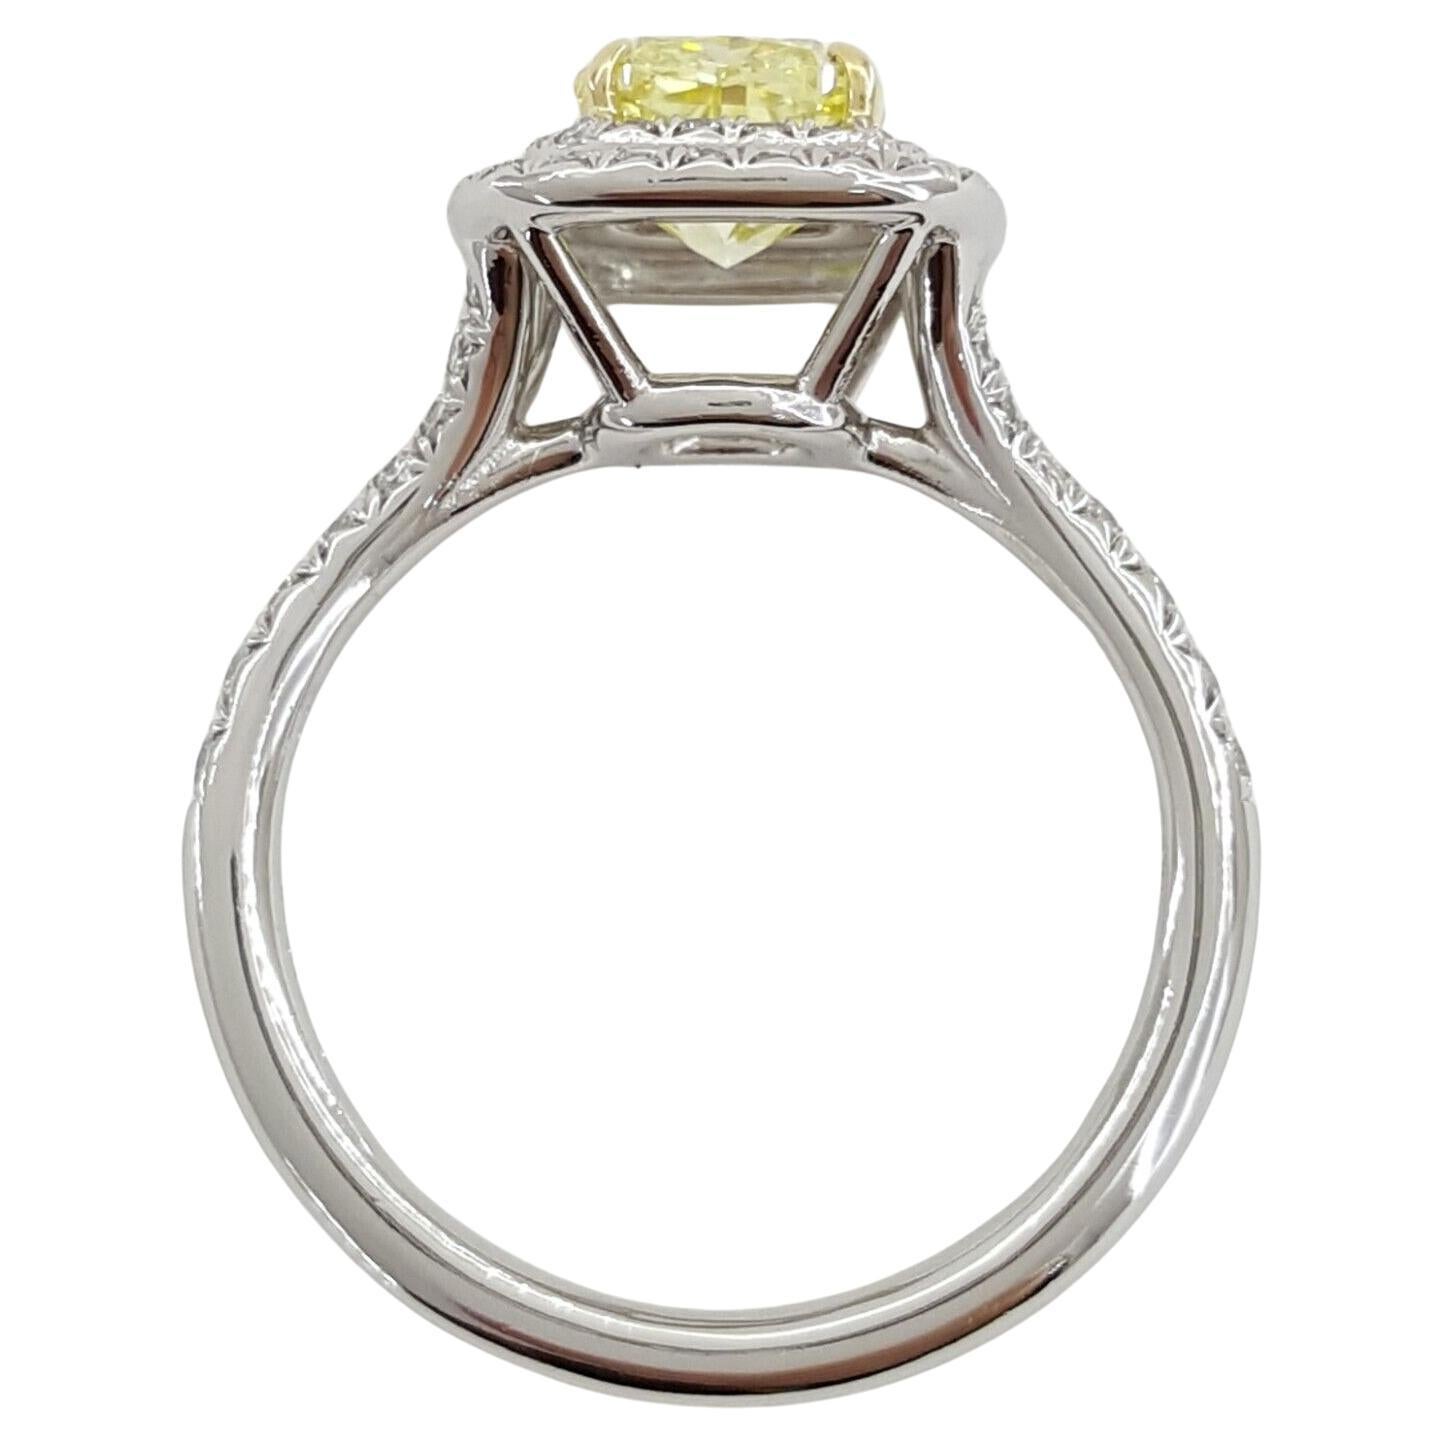 Entdecken Sie den Inbegriff von Eleganz mit der Tiffany & Co. Soleste® Verlobungsring mit einem atemberaubenden 1,78 ct Fancy Intense Yellow Cushion Brilliant Cut Diamant. Eingefasst in einen luxuriösen Kranz aus Platin und 18-karätigem Gelbgold